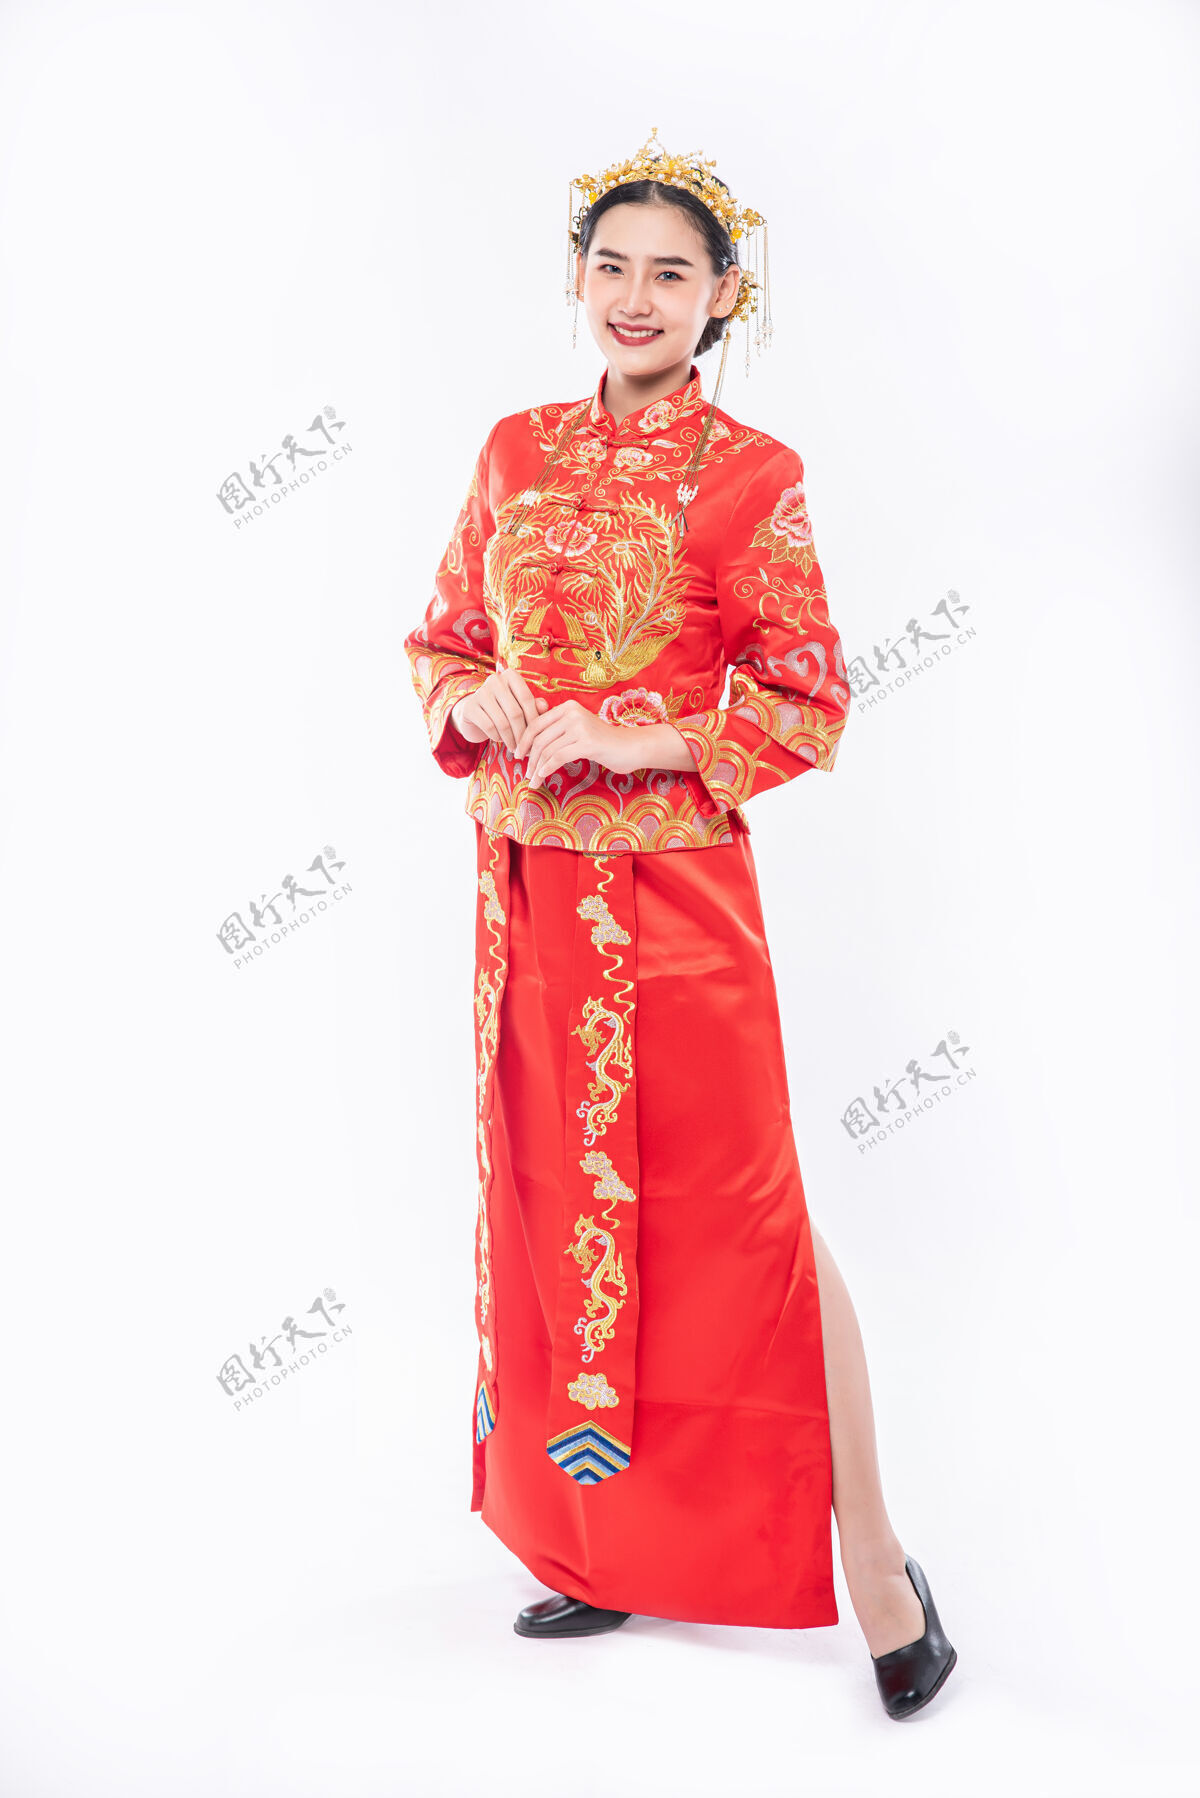 中国文化穿旗袍套装的女士微笑着迎接过年活动中的旅客中国新年旗袍成人